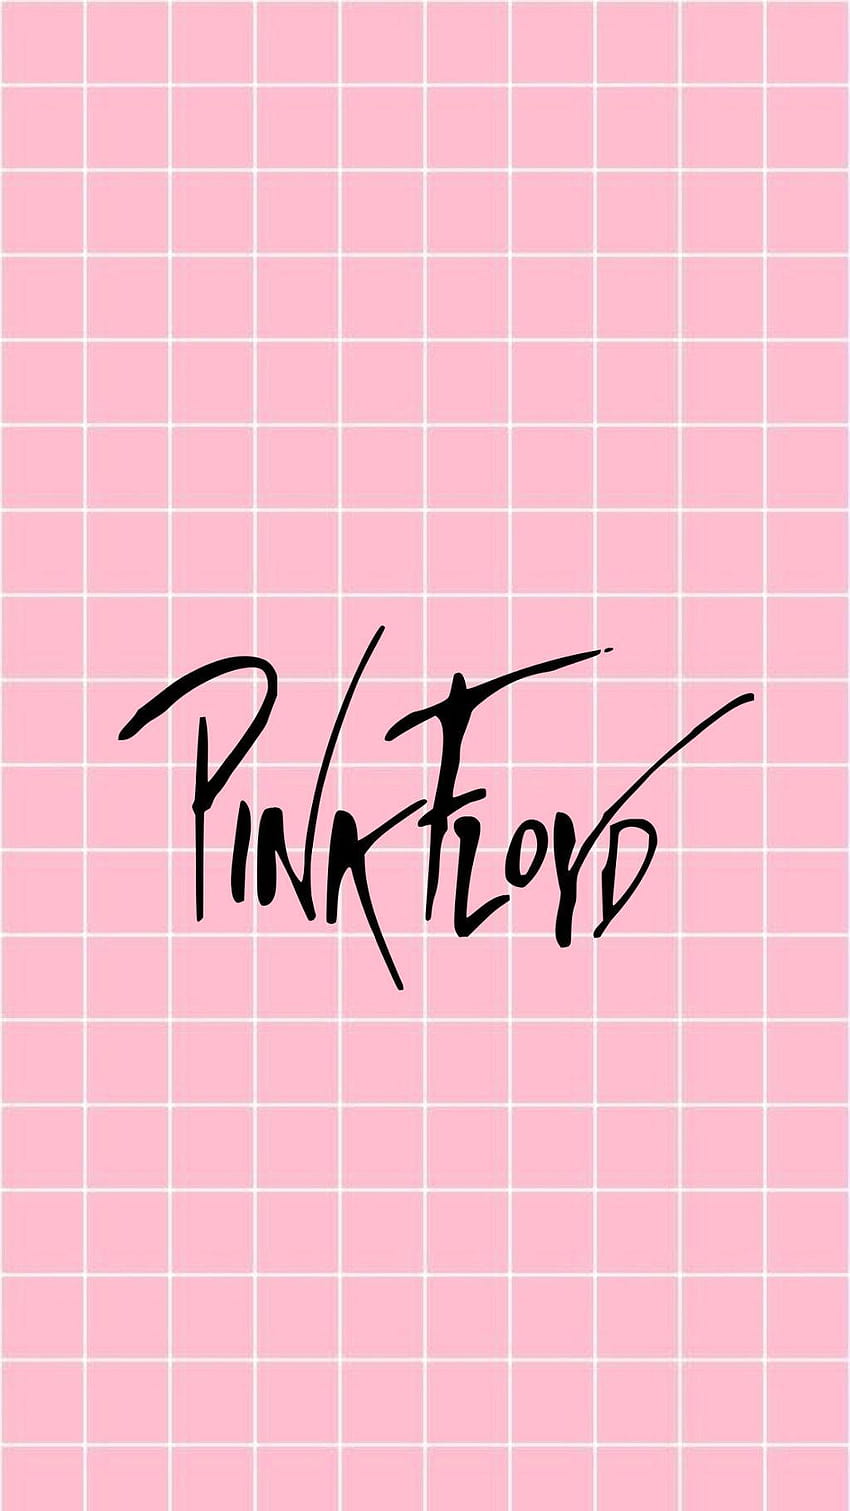 잠금 화면 핑크 pinkfloyd tumblr, 핑크 플로이드 2019 HD 전화 배경 화면